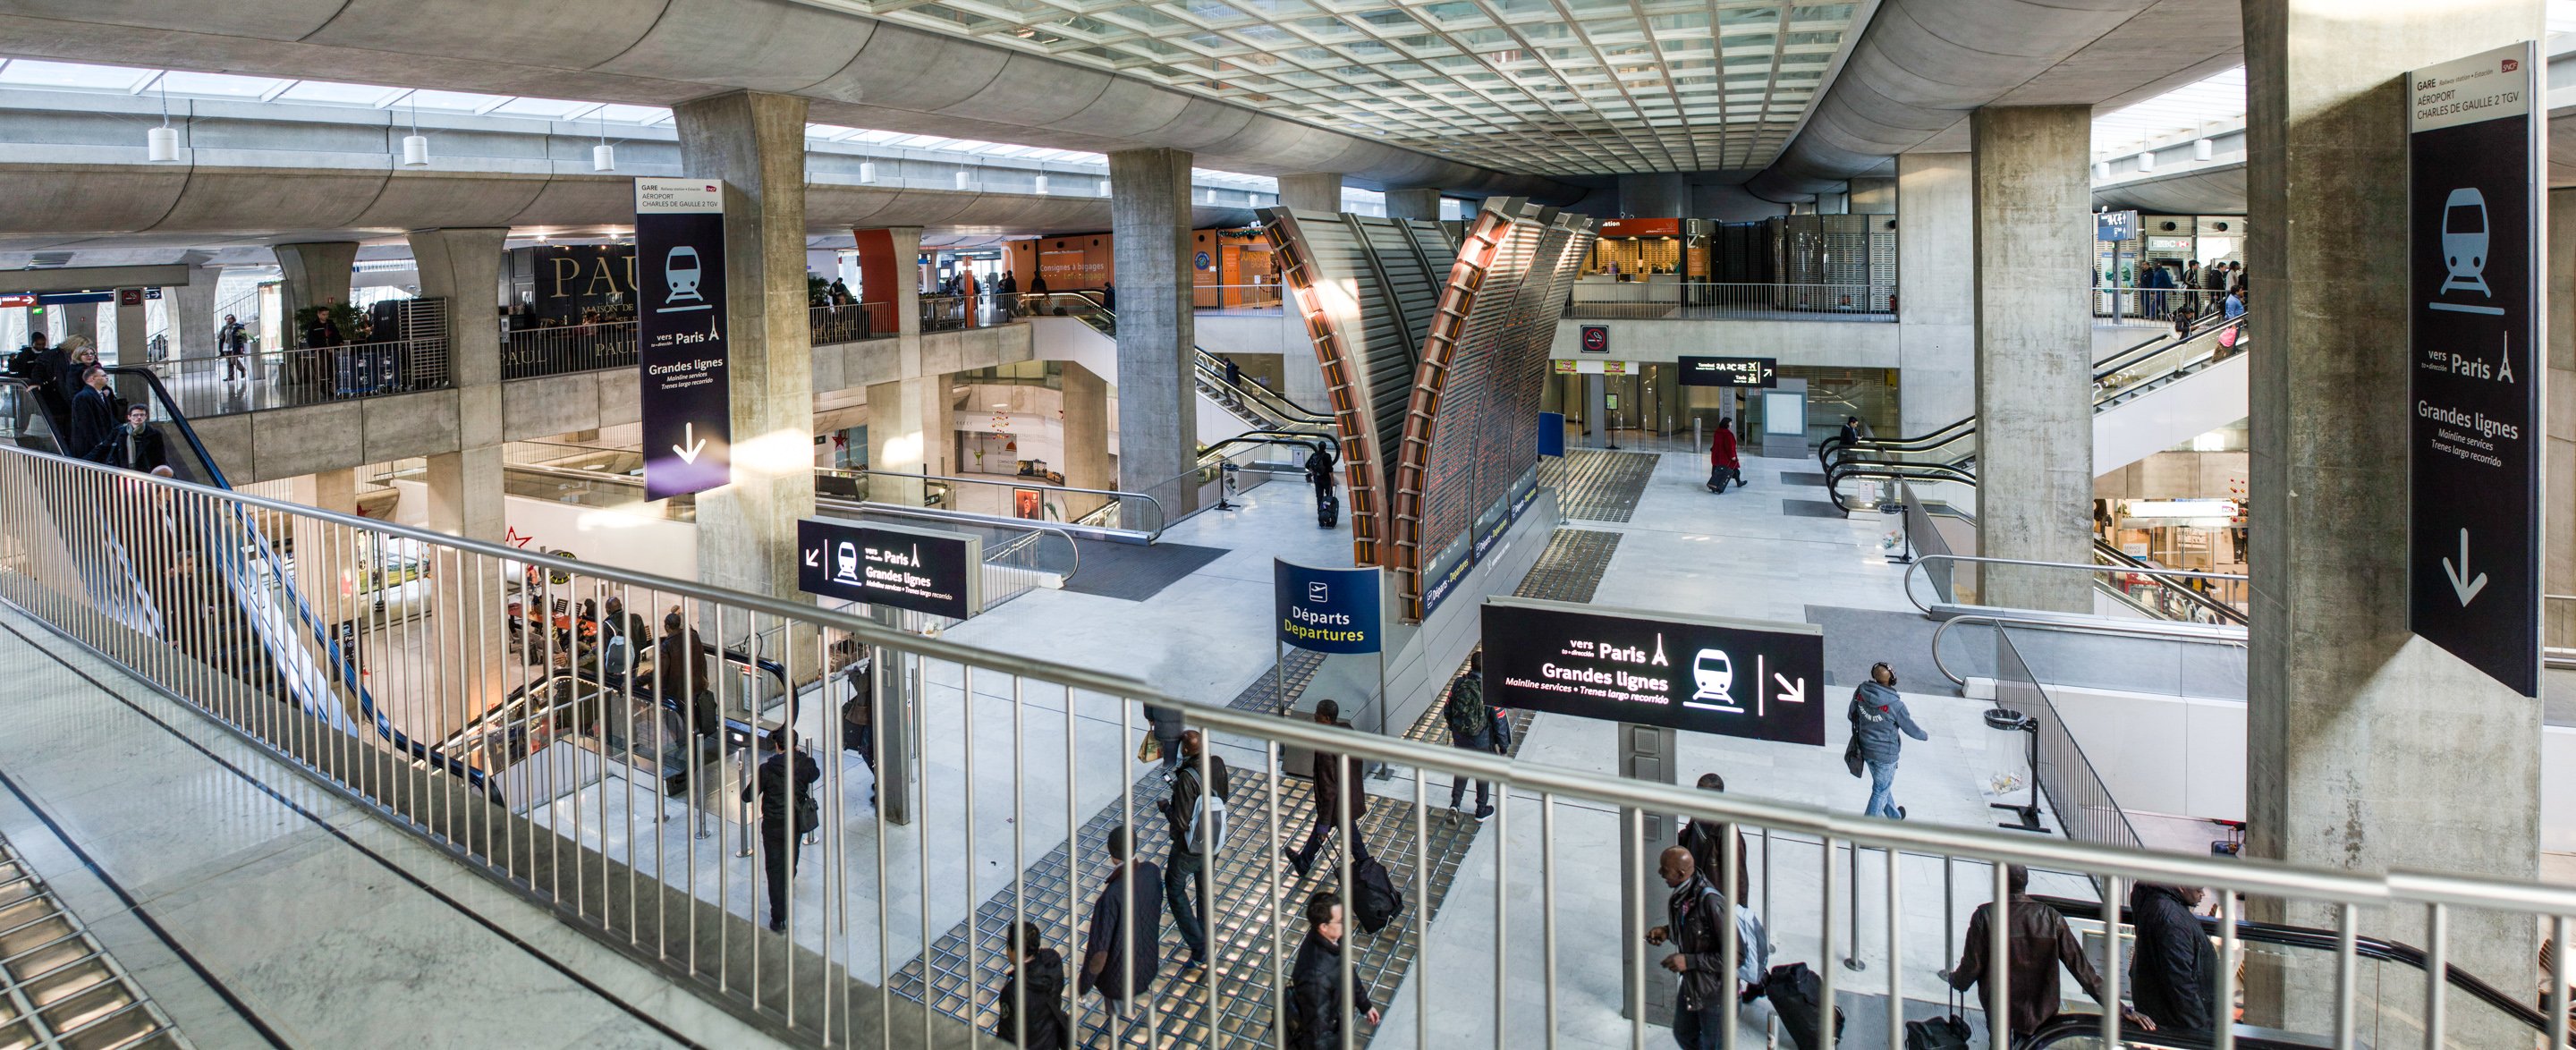 Terminal 2E - Paris-Charles de Gaulle (Roissy, CDG) - Paris Aéroport